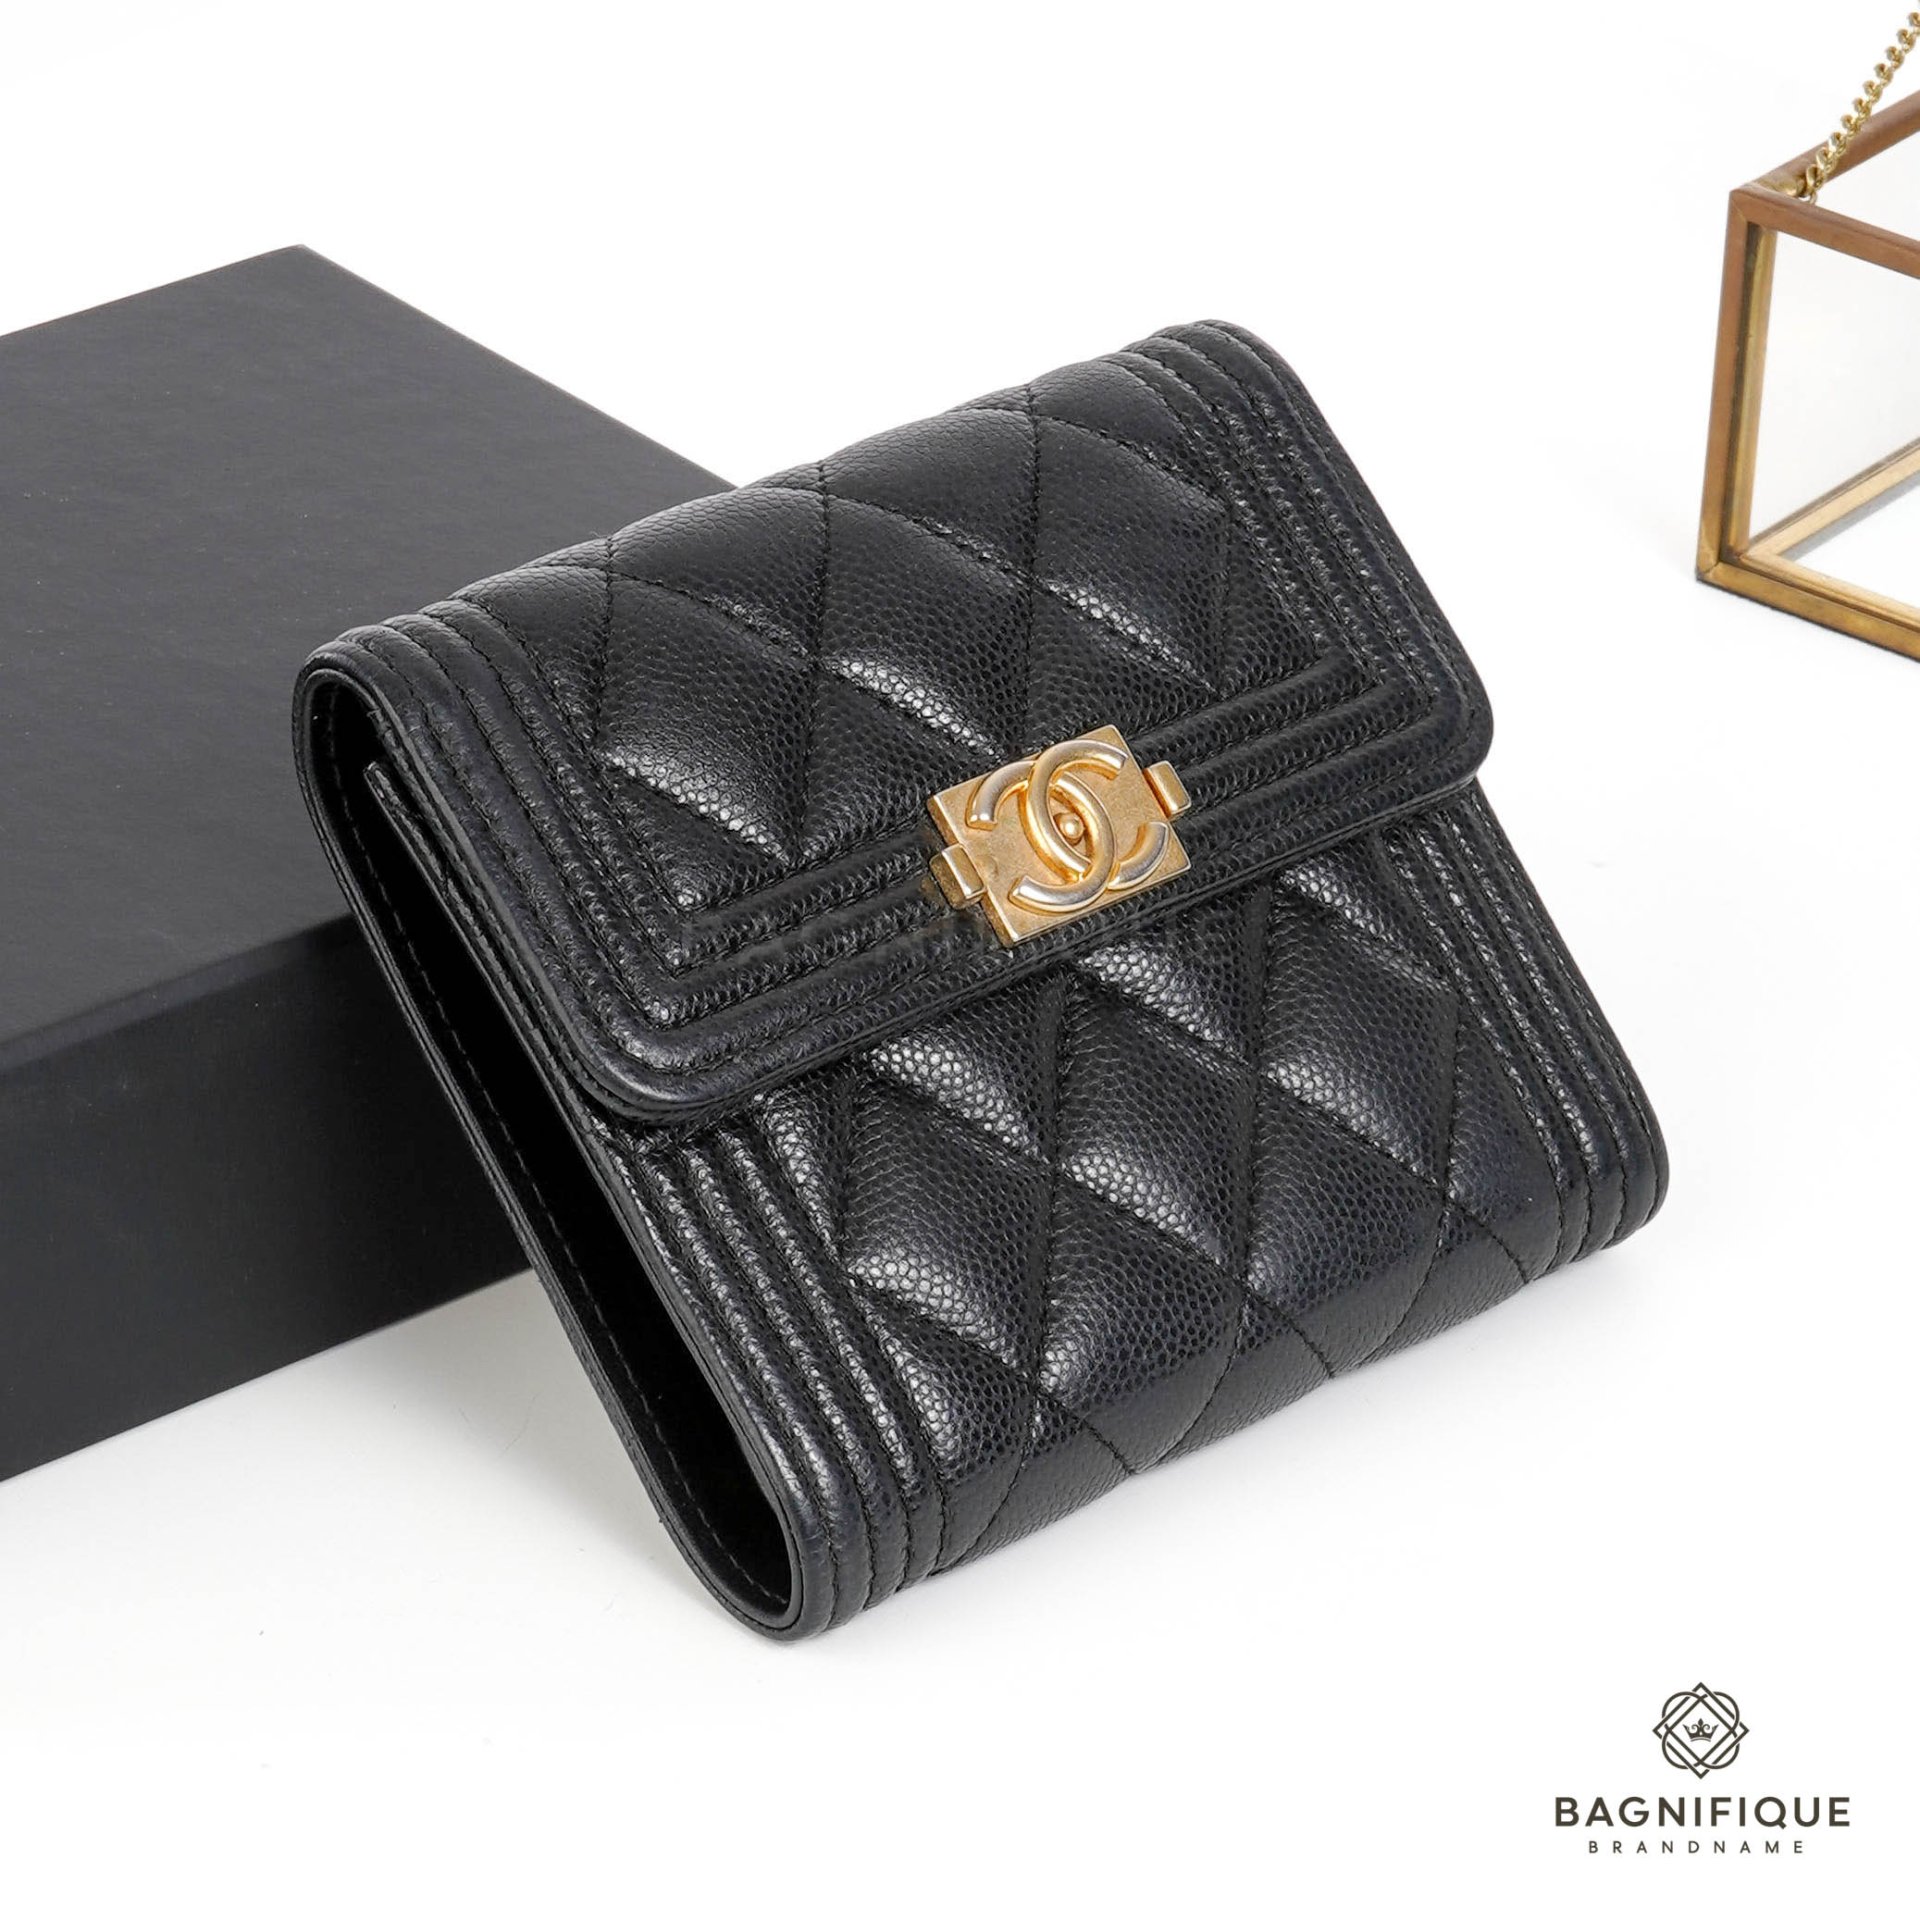 Chanel - Chanel Boy Flap Tri-Fold Caviar Wallet